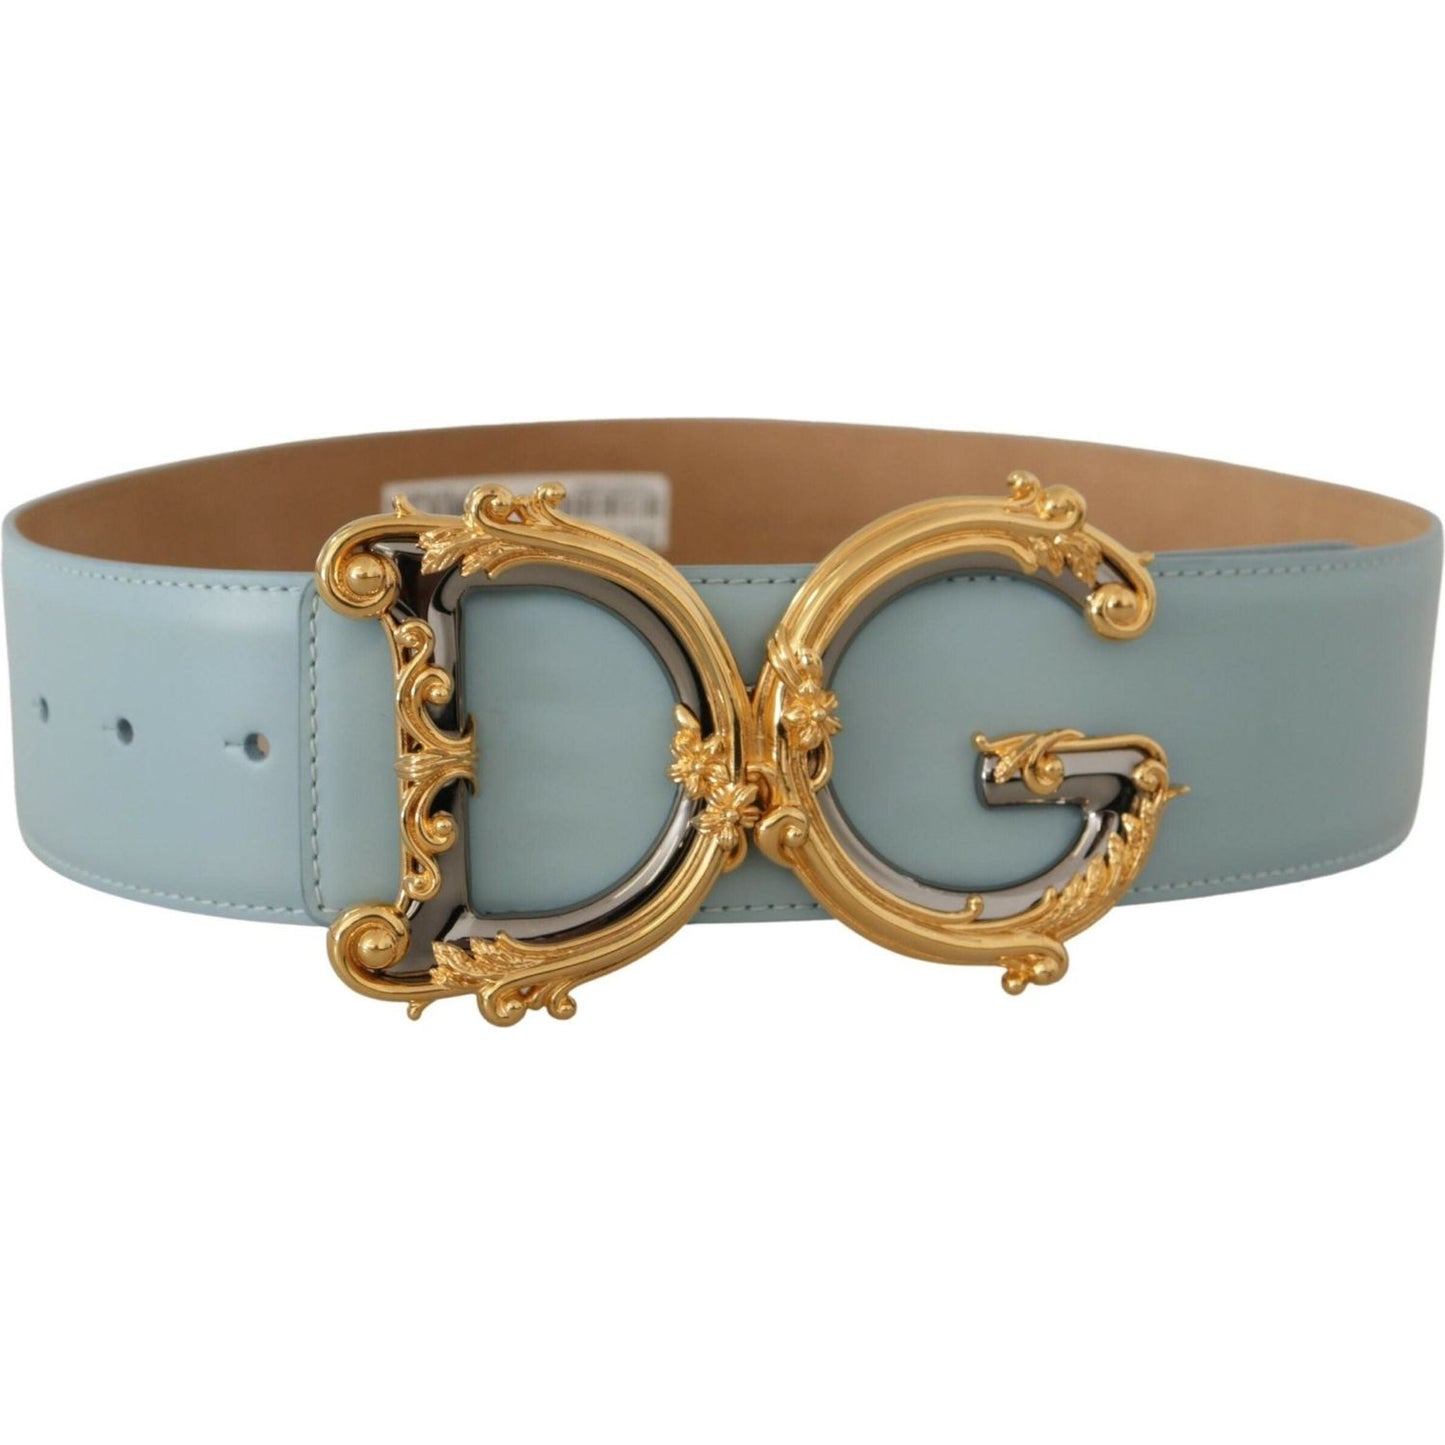 Dolce & Gabbana Elegant Blue Leather Belt with Logo Buckle blue-leather-wide-waist-dg-logo-baroque-gold-buckle-belt